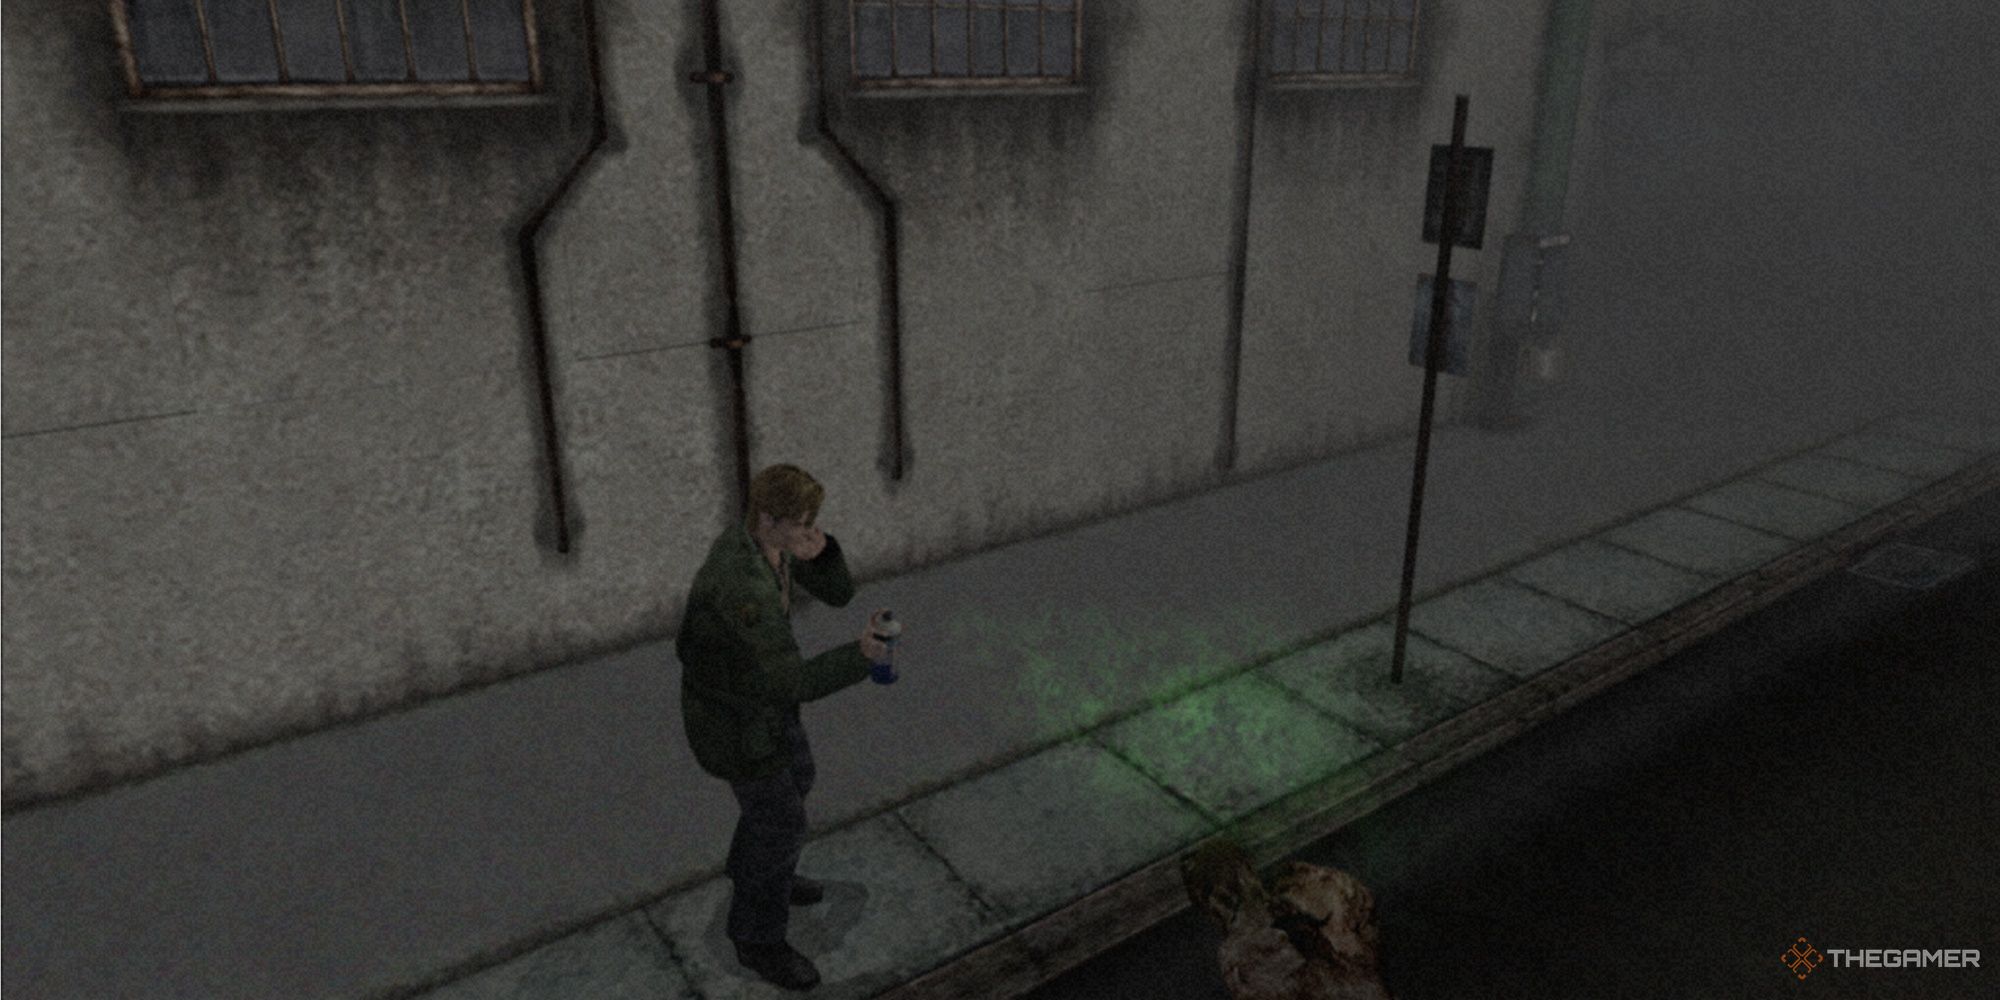 James Sunderland using the Green Hyper Spray in Silent Hill 2